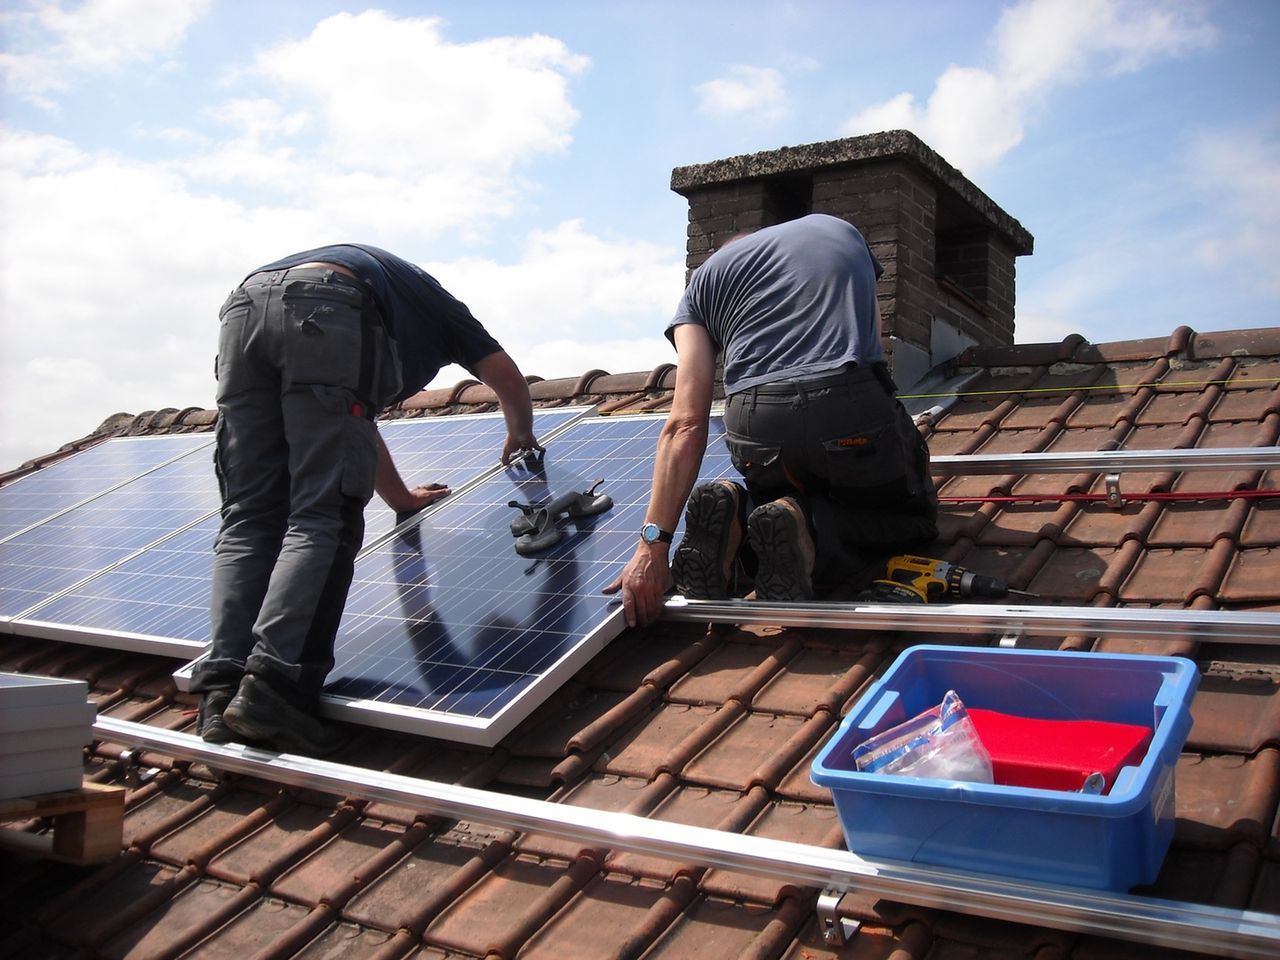 Dachy z instalacją fotowoltaiczną mogą stwarzać zagrożenie pożarowe.